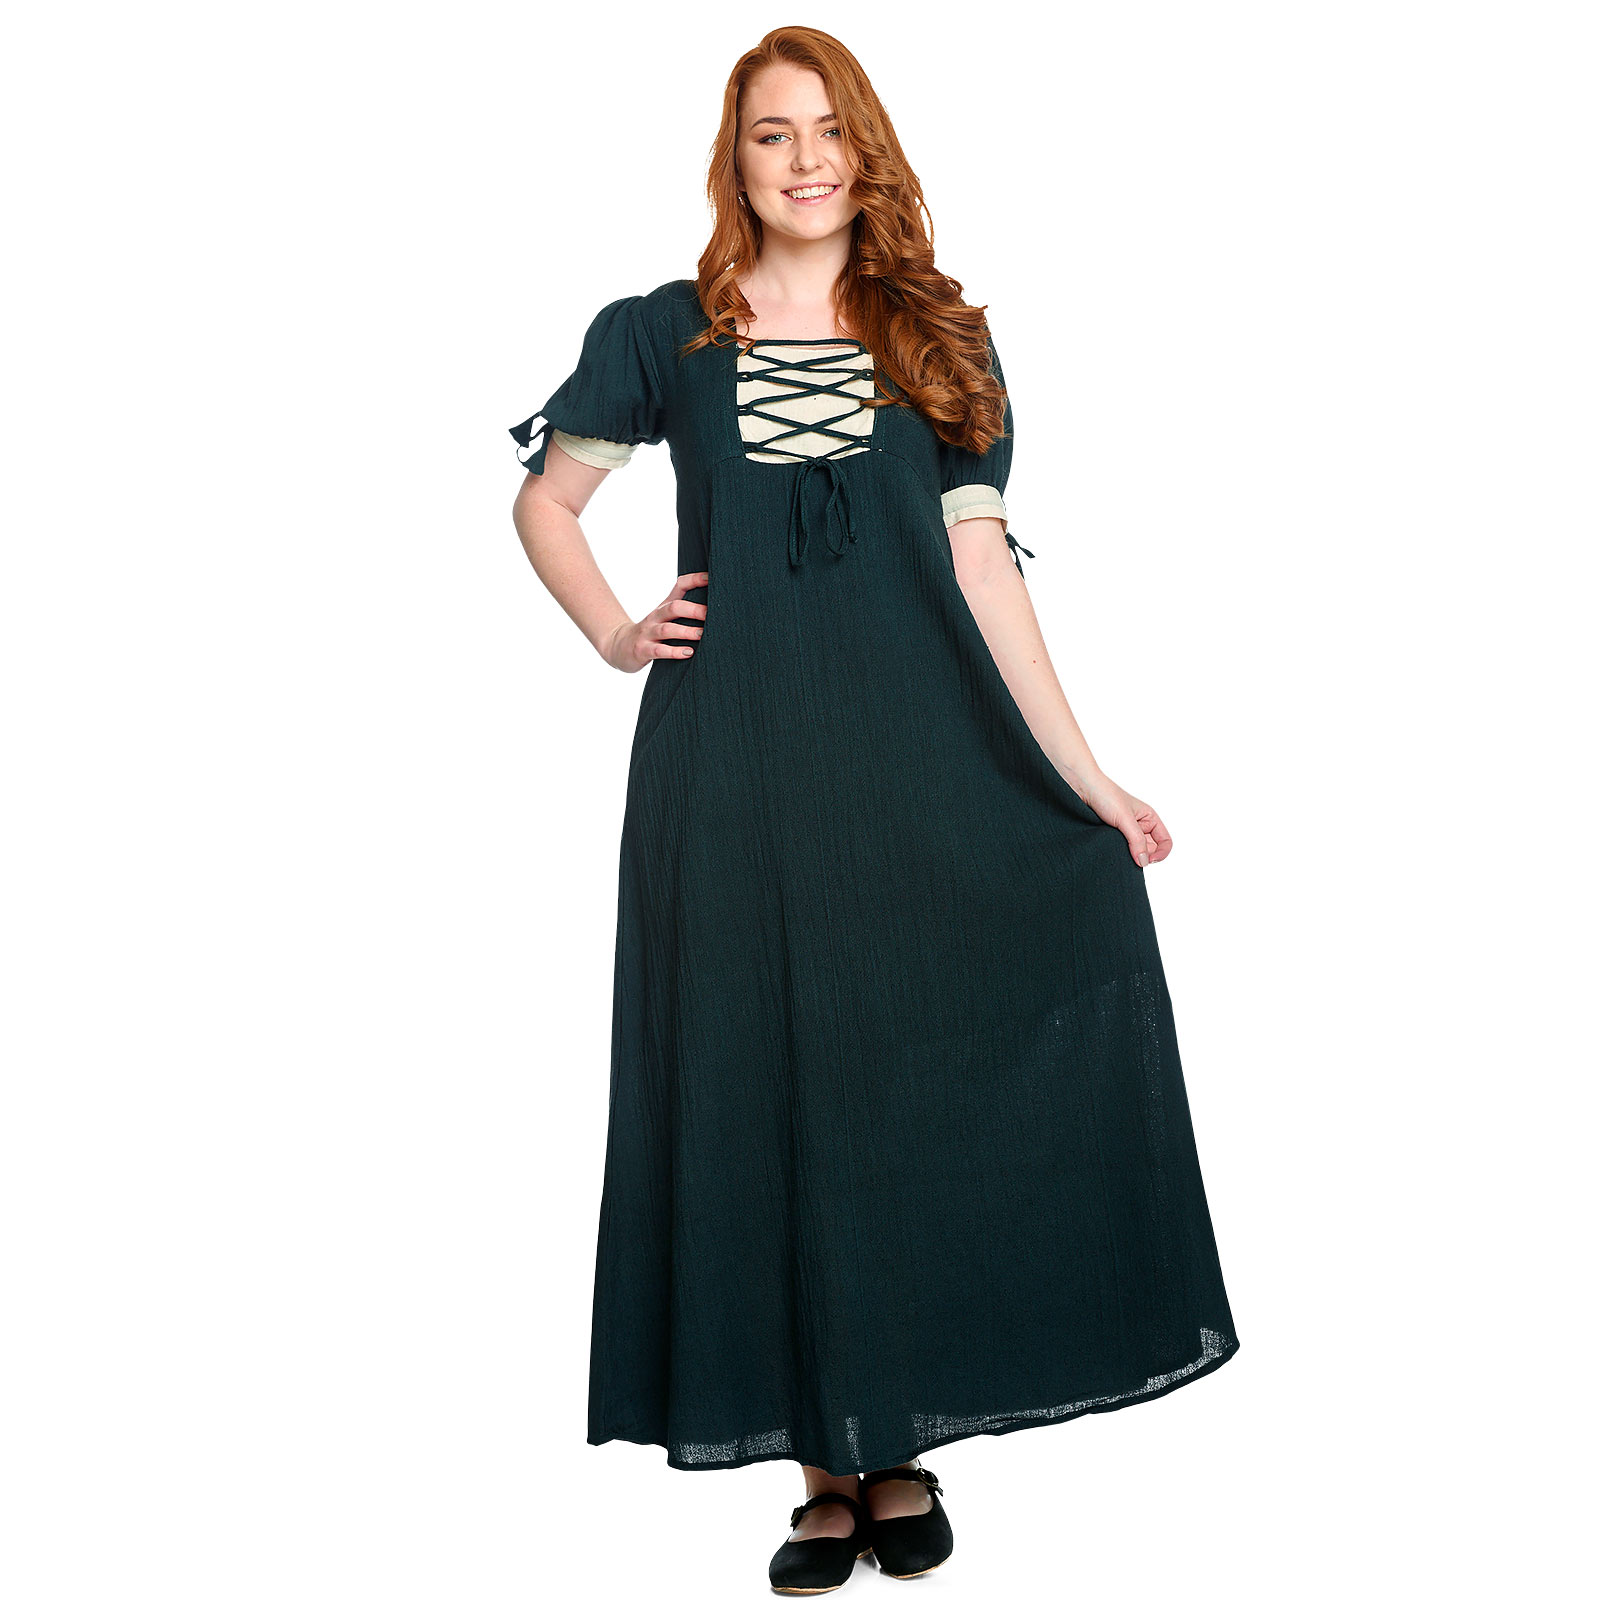 Mittelalter Sommer Kleid Lysa grün-beige